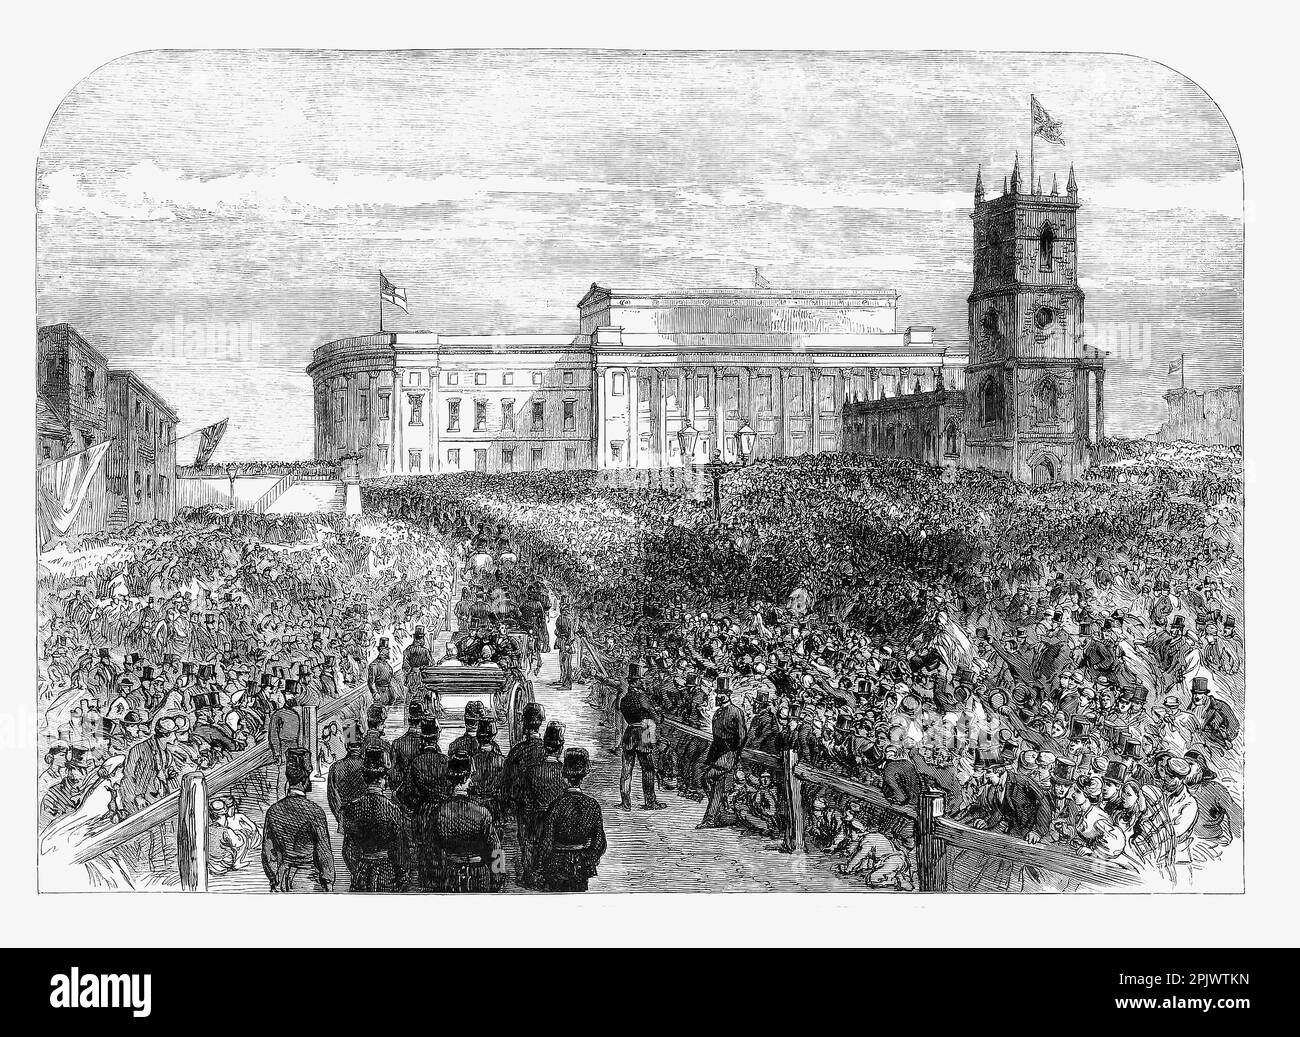 Der Prinz und die Prinzessin von Wales besuchen im November 1865 die Saint George's Hall in Liverpool. Die 1854 eröffnete Halle ist ein neoklassizistisches Gebäude mit Konzerthallen und Gerichten und befindet sich jetzt gegenüber dem Bahnhof Lime Street (wo die Kirche stand) im Zentrum von Liverpool, England. Stockfoto